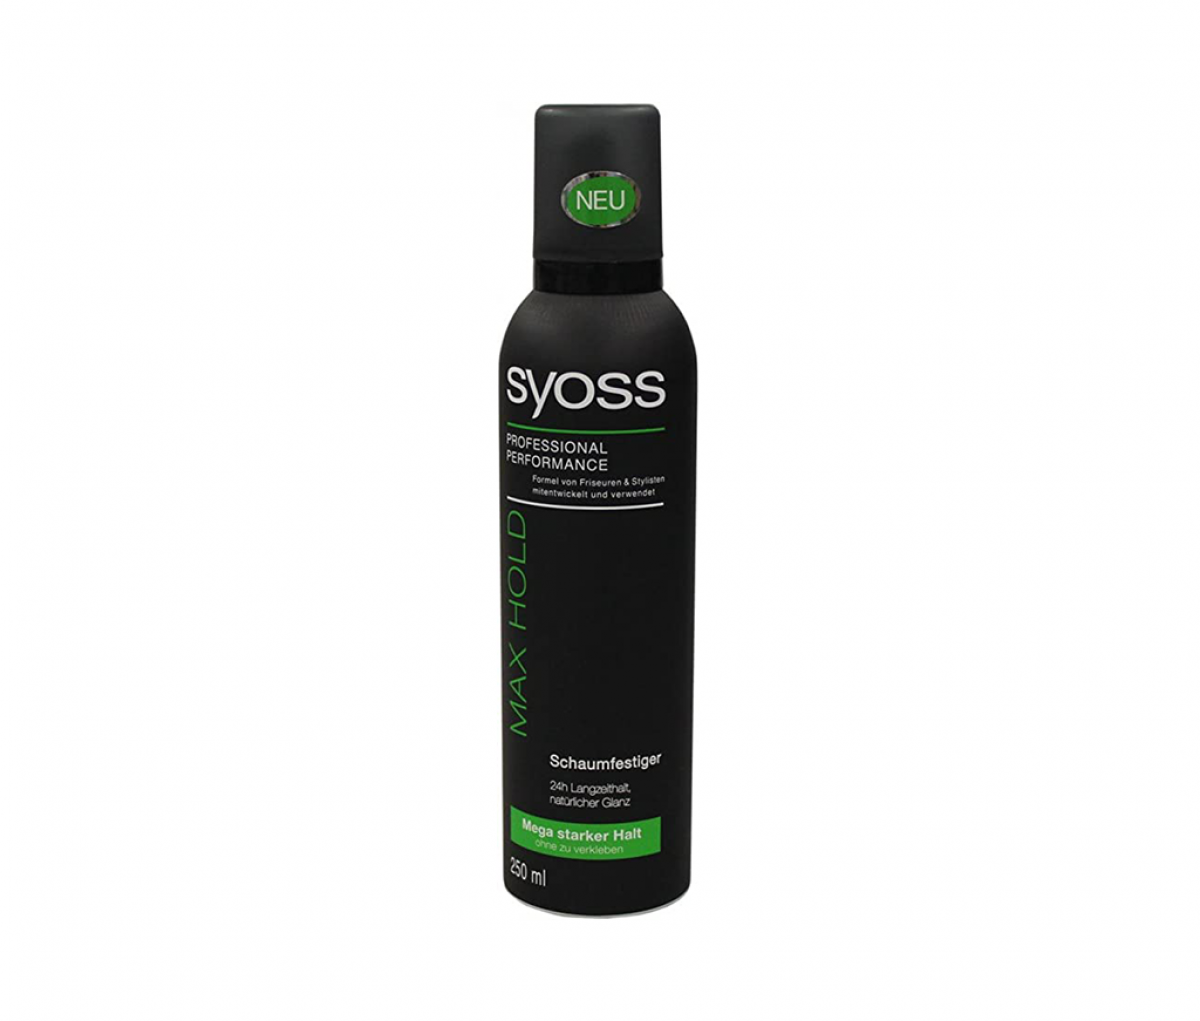 Syoss max hold мусс для укладки волос